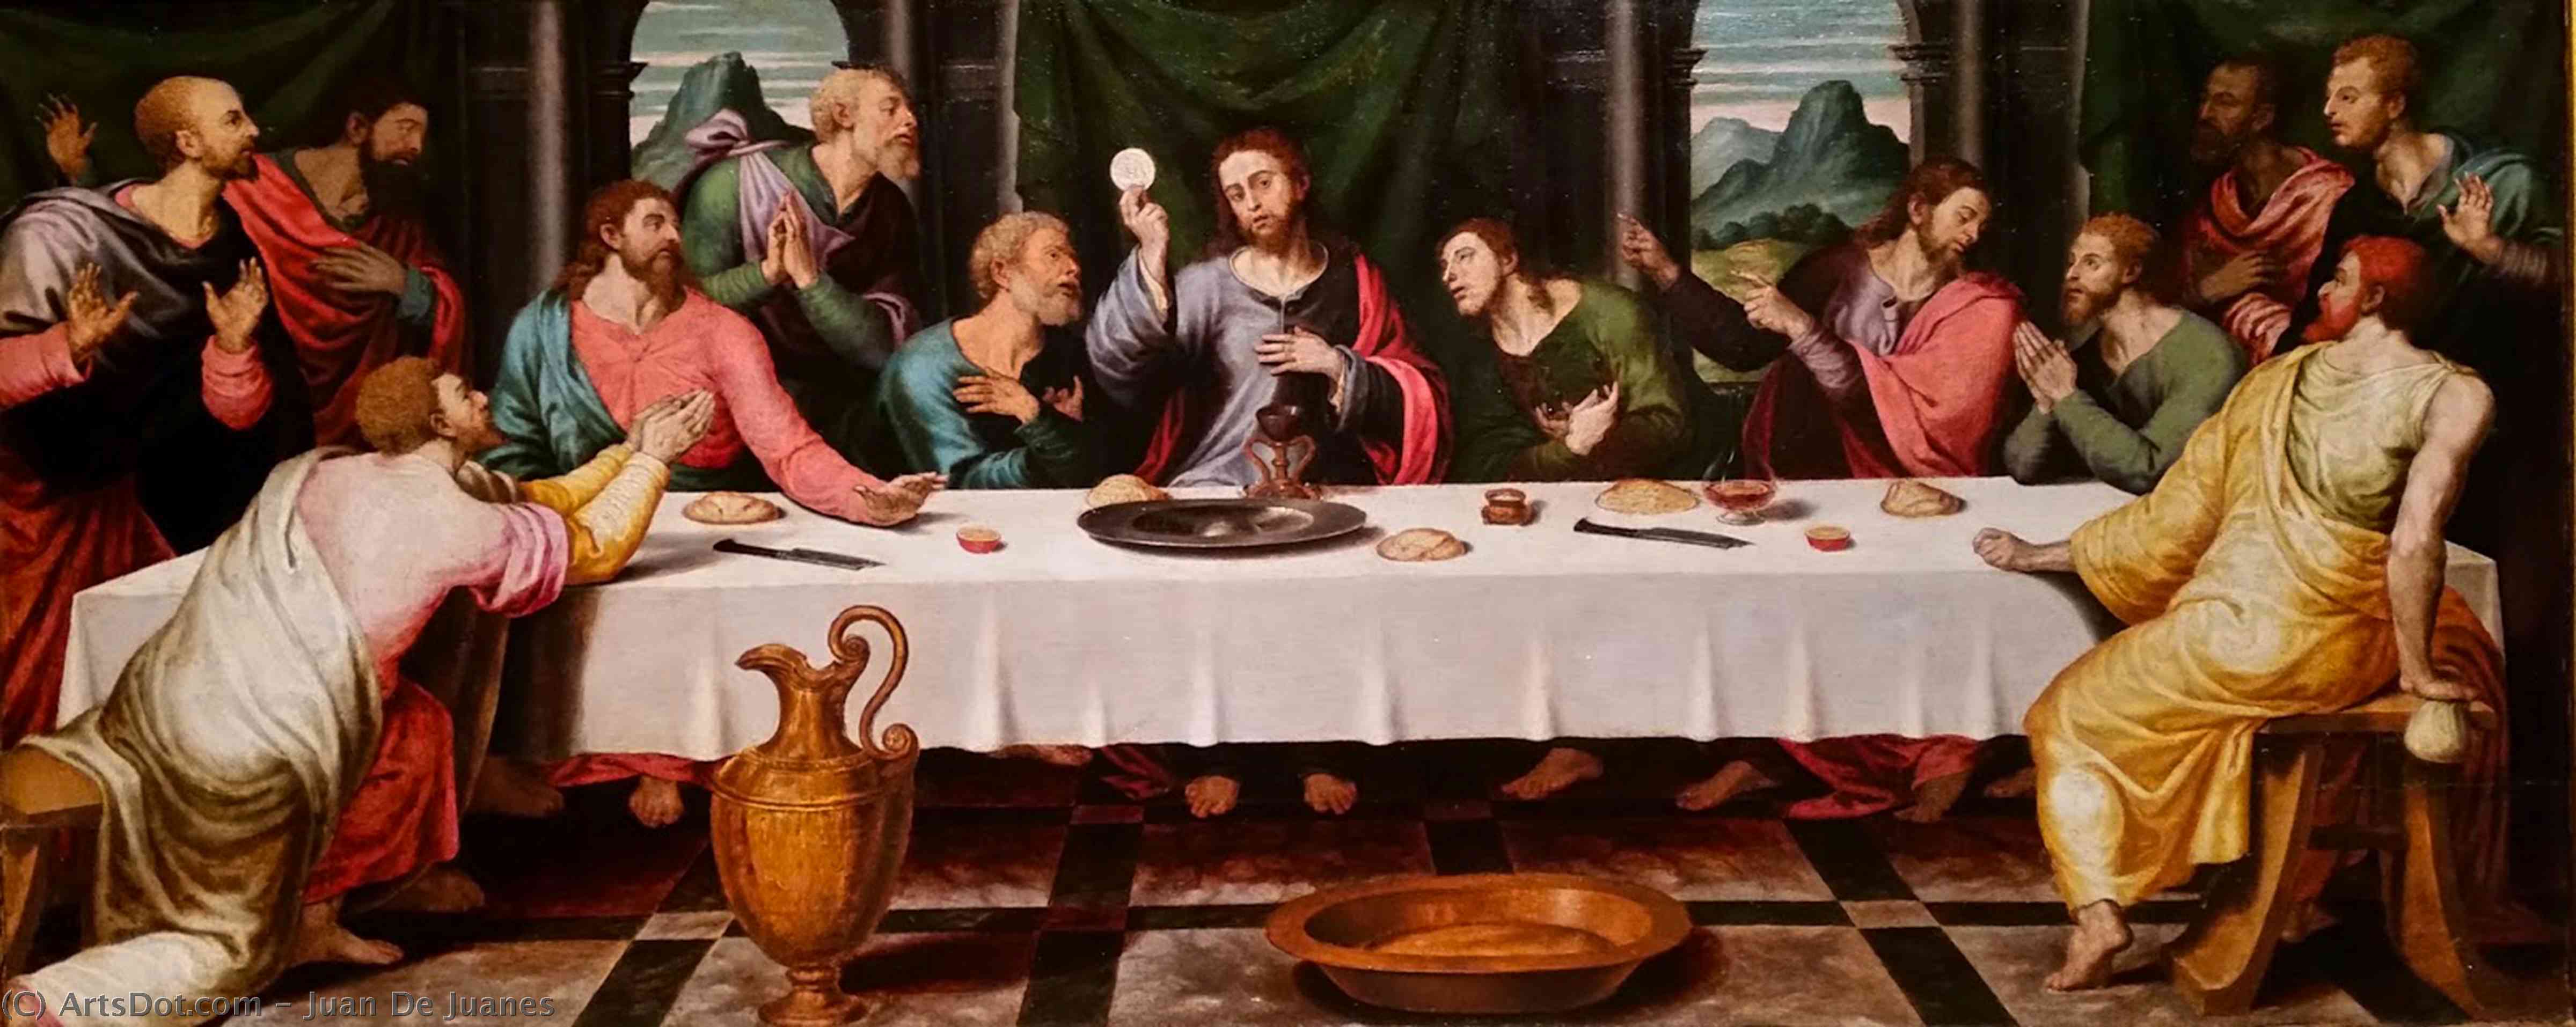 Wikioo.org - สารานุกรมวิจิตรศิลป์ - จิตรกรรม Juan De Juanes - The Last Supper